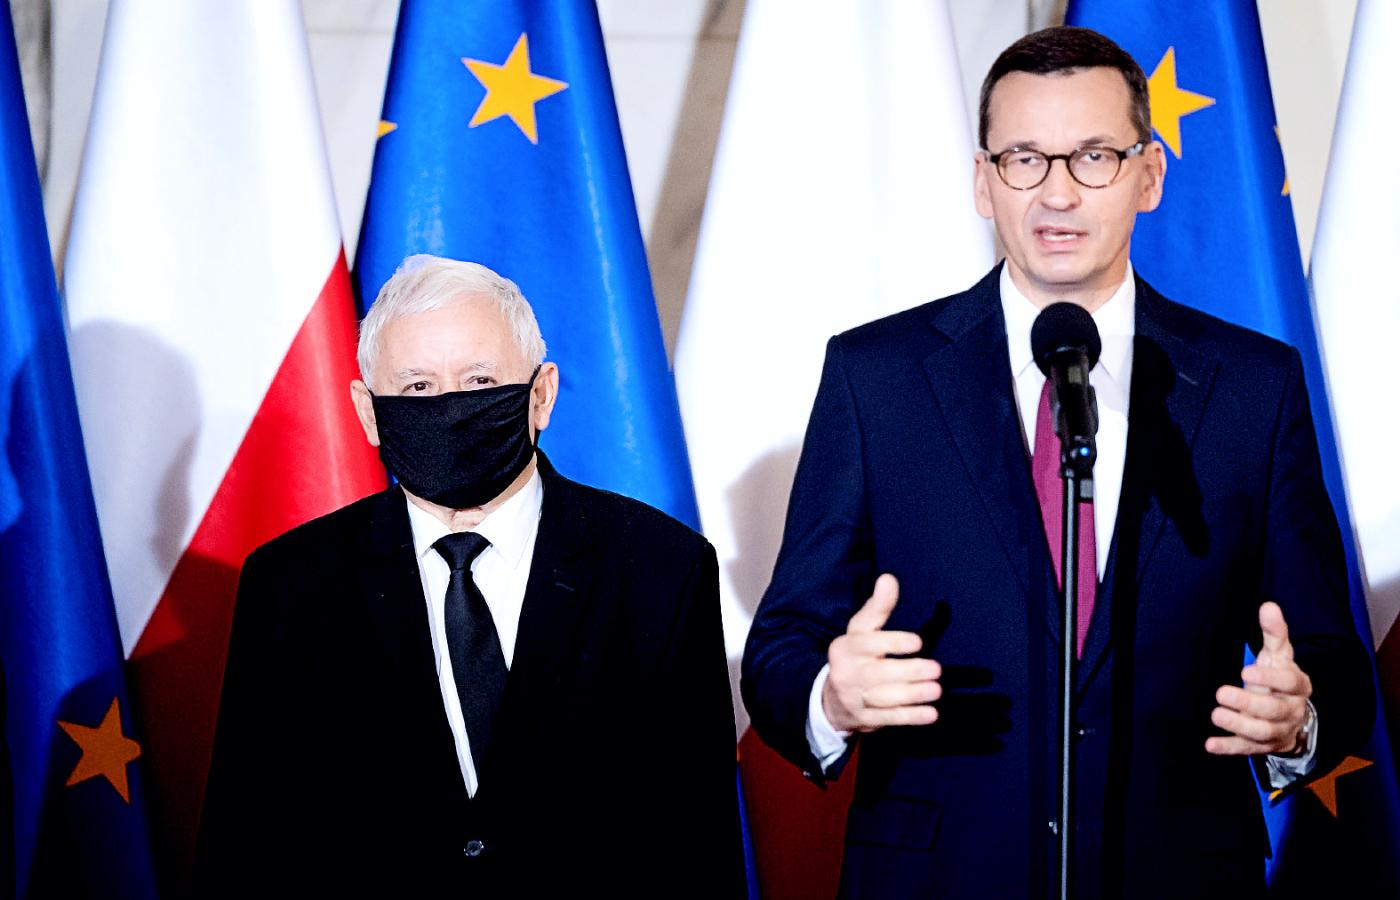 Od lewej: wicepremier Jarosław Kaczyński i premier Mateusz Morawiecki